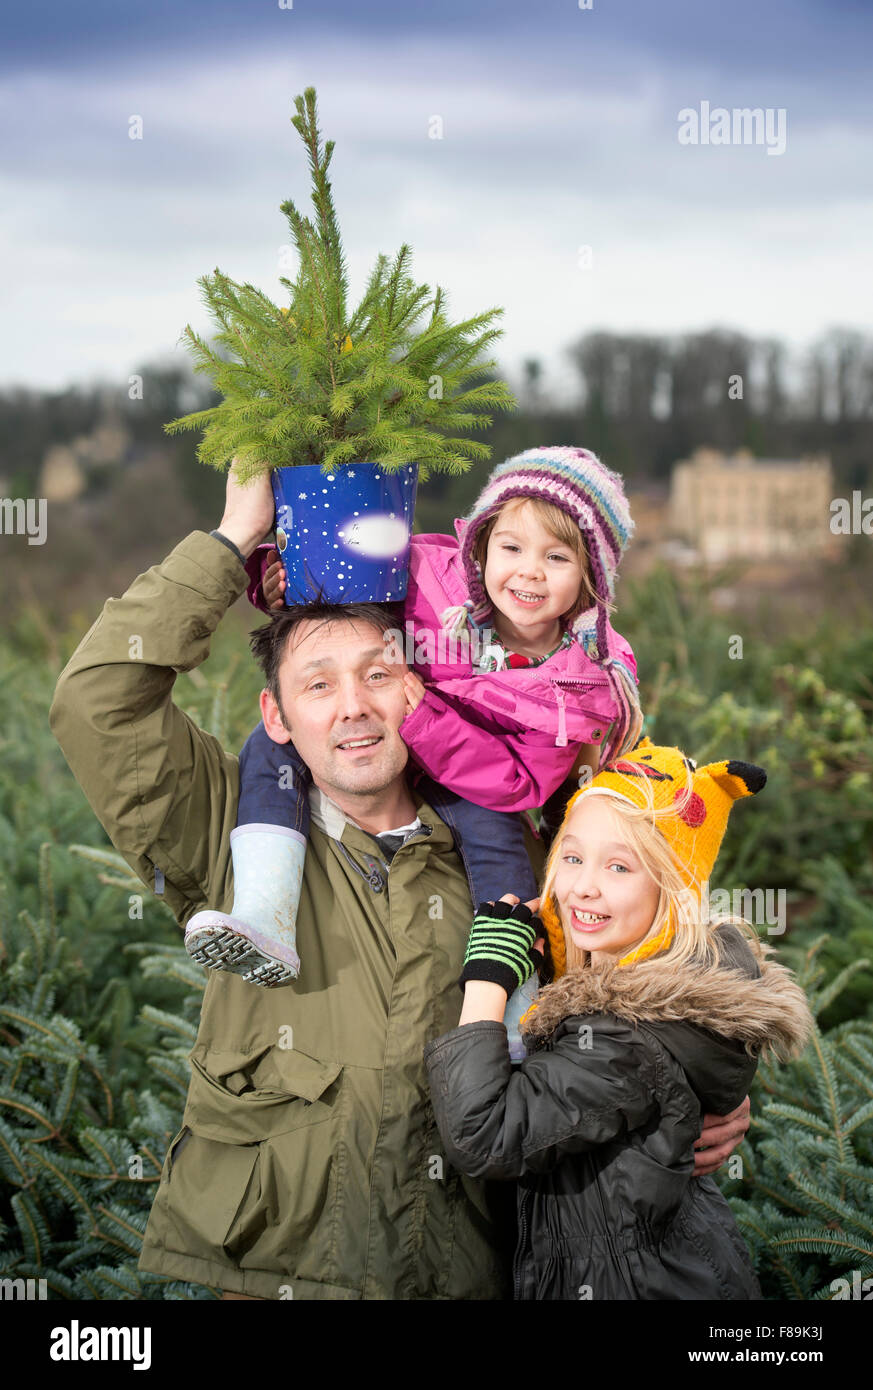 Árboles de Navidad árbol de Navidad de la familia recogiendo compra Foto de stock